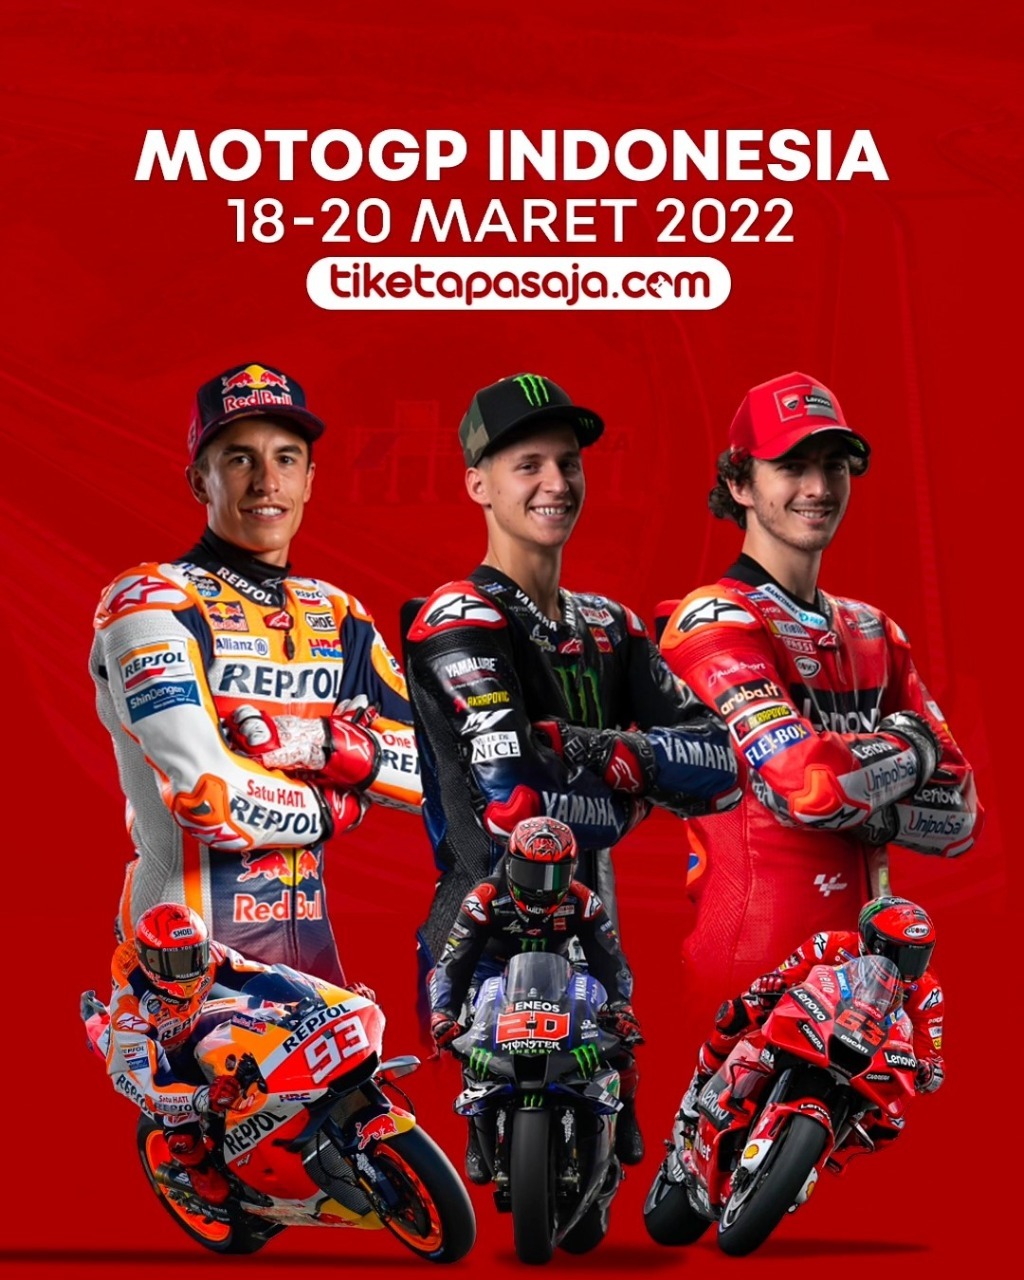 Poster perhelatan MotoGP 2022 Mandalika. (Foto: Ist)